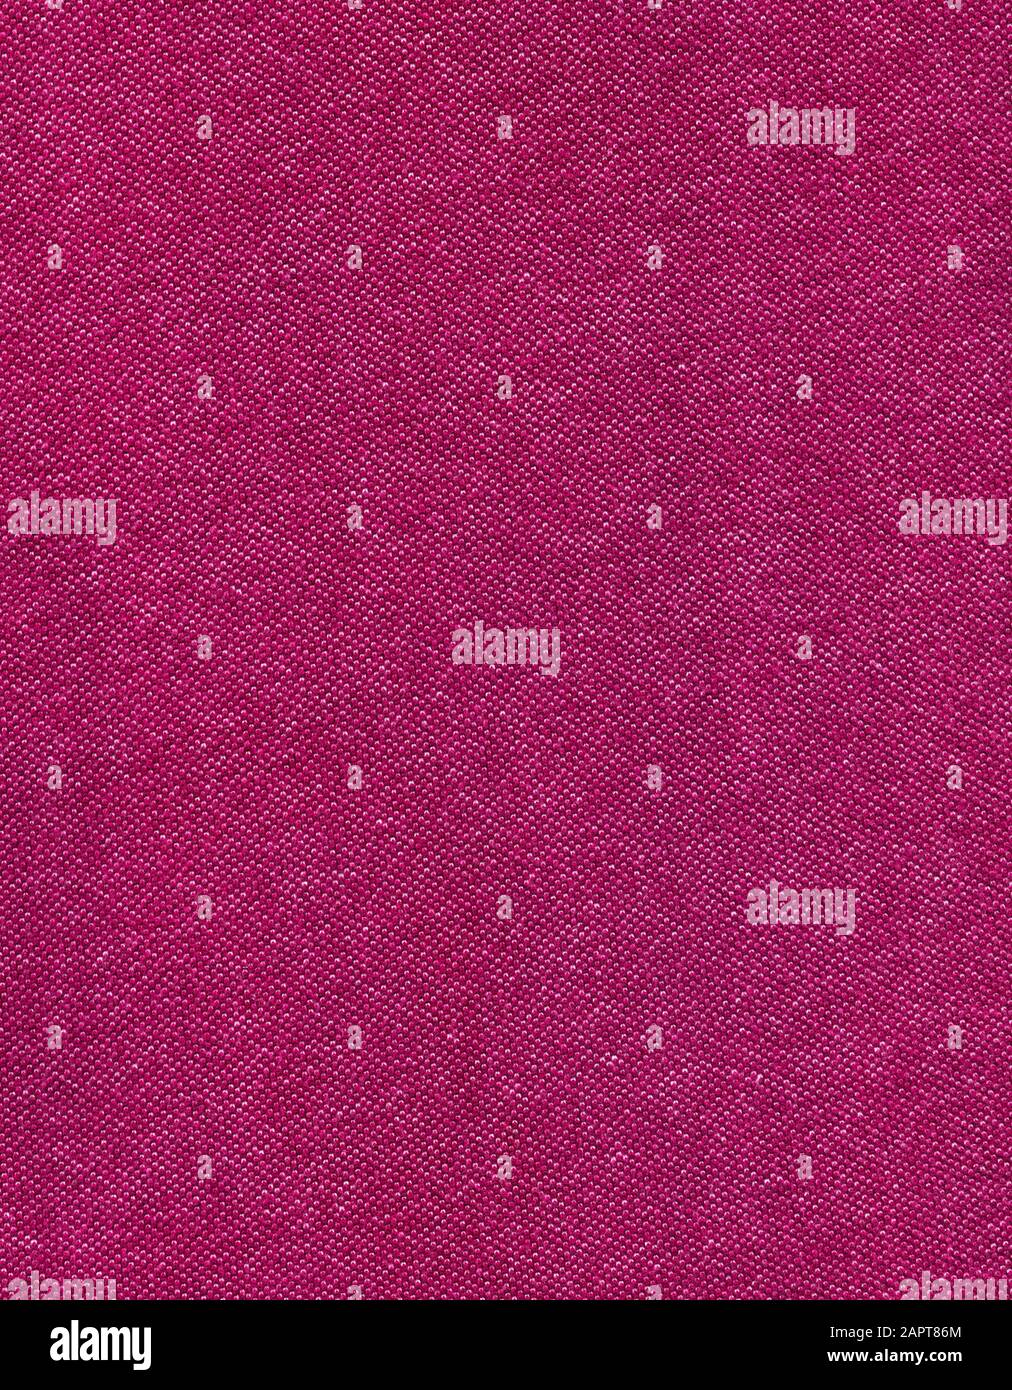 Vecchio tessuto di cotone al cento per cento in un colore rosso rosato scuro. La scansione ad alta risoluzione mostra tutti i dettagli. Foto Stock